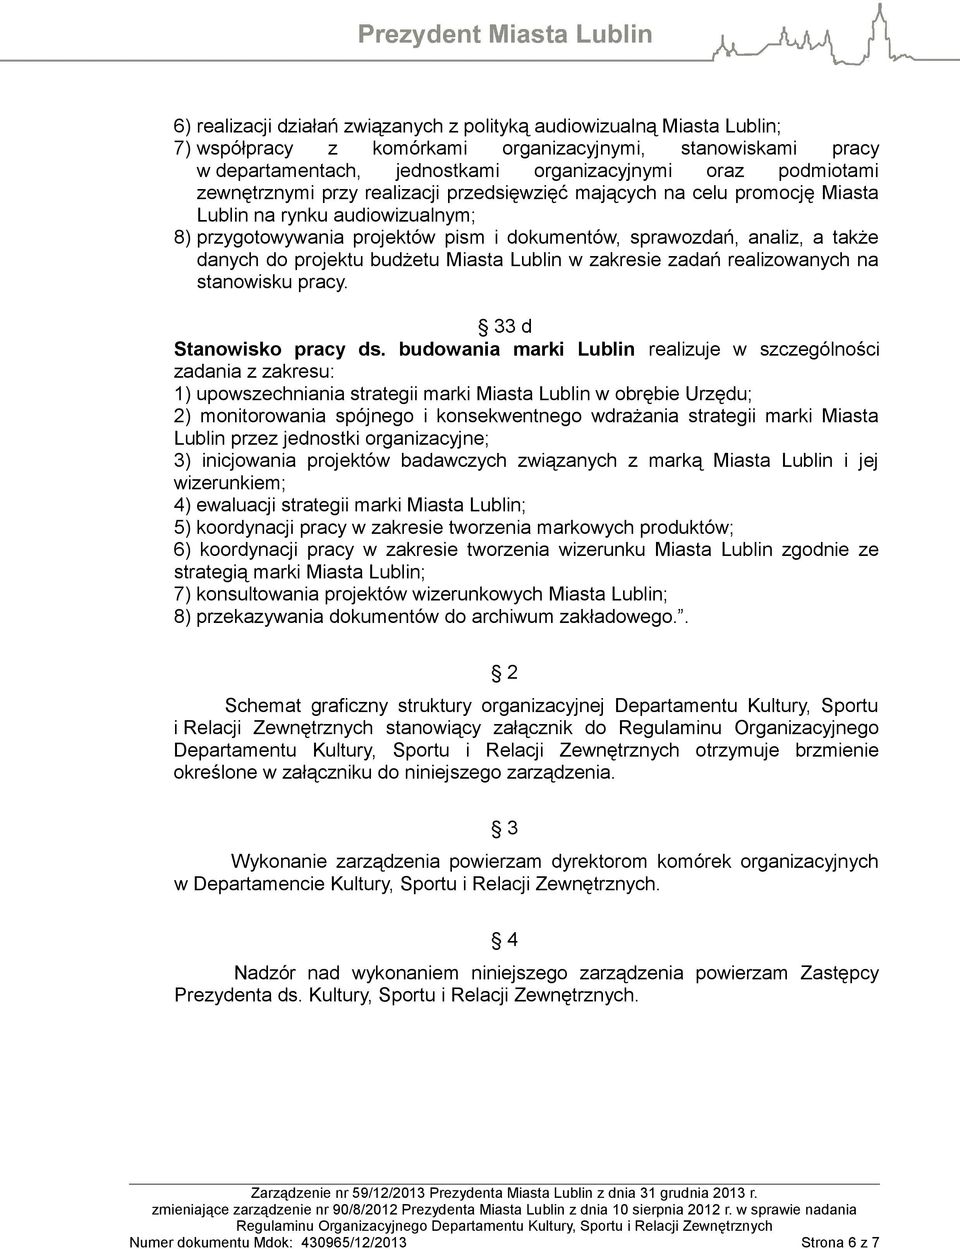 projektu budżetu Miasta Lublin w zakresie zadań realizowanych na stanowisku pracy. 33 d Stanowisko pracy ds.